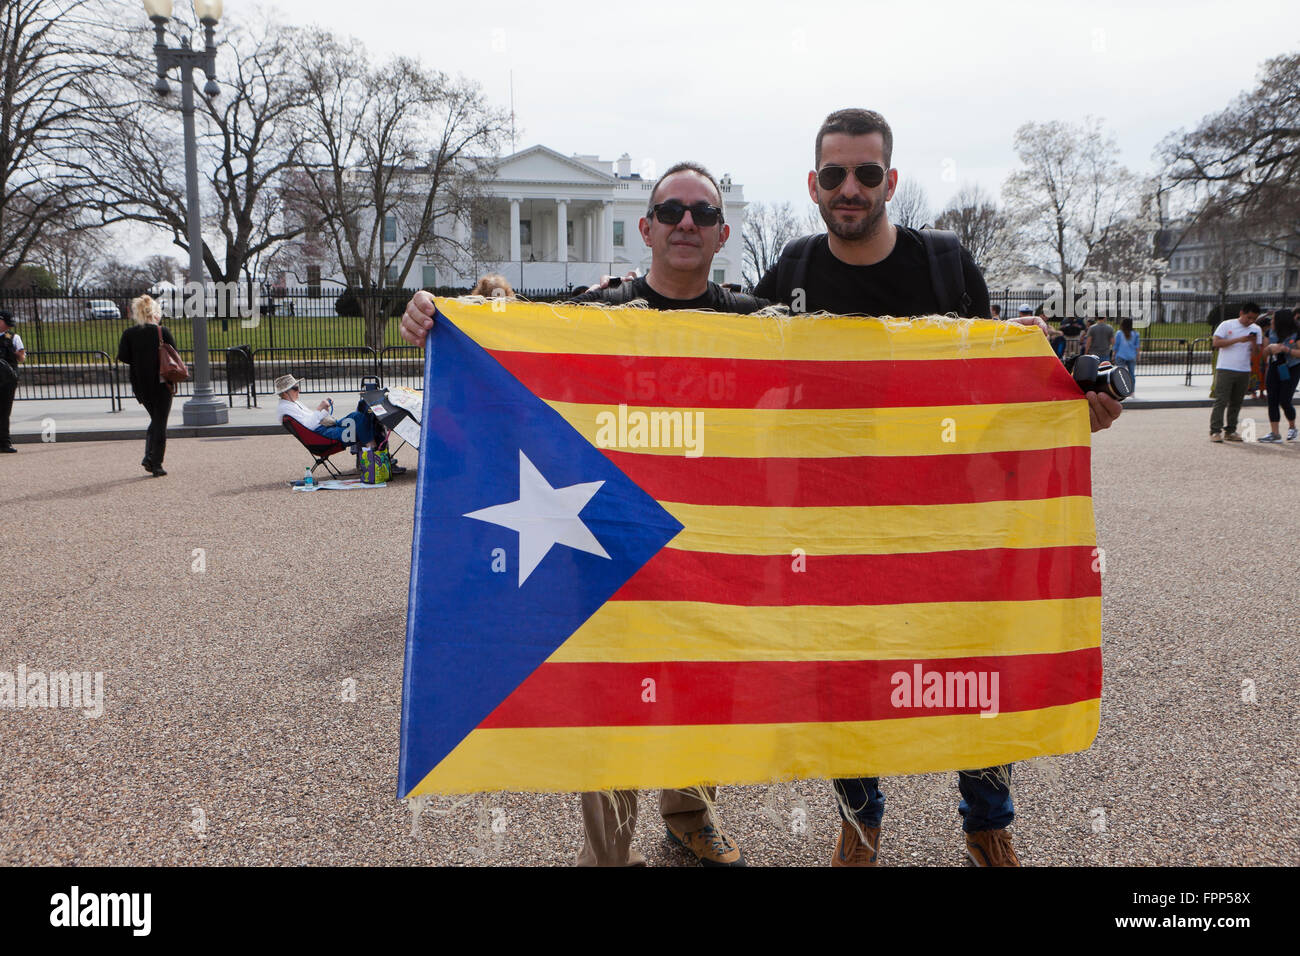 Les hommes tiennent un drapeau catalan Catalogne (drapeau) en face de la Maison Blanche - Washington, DC USA Banque D'Images